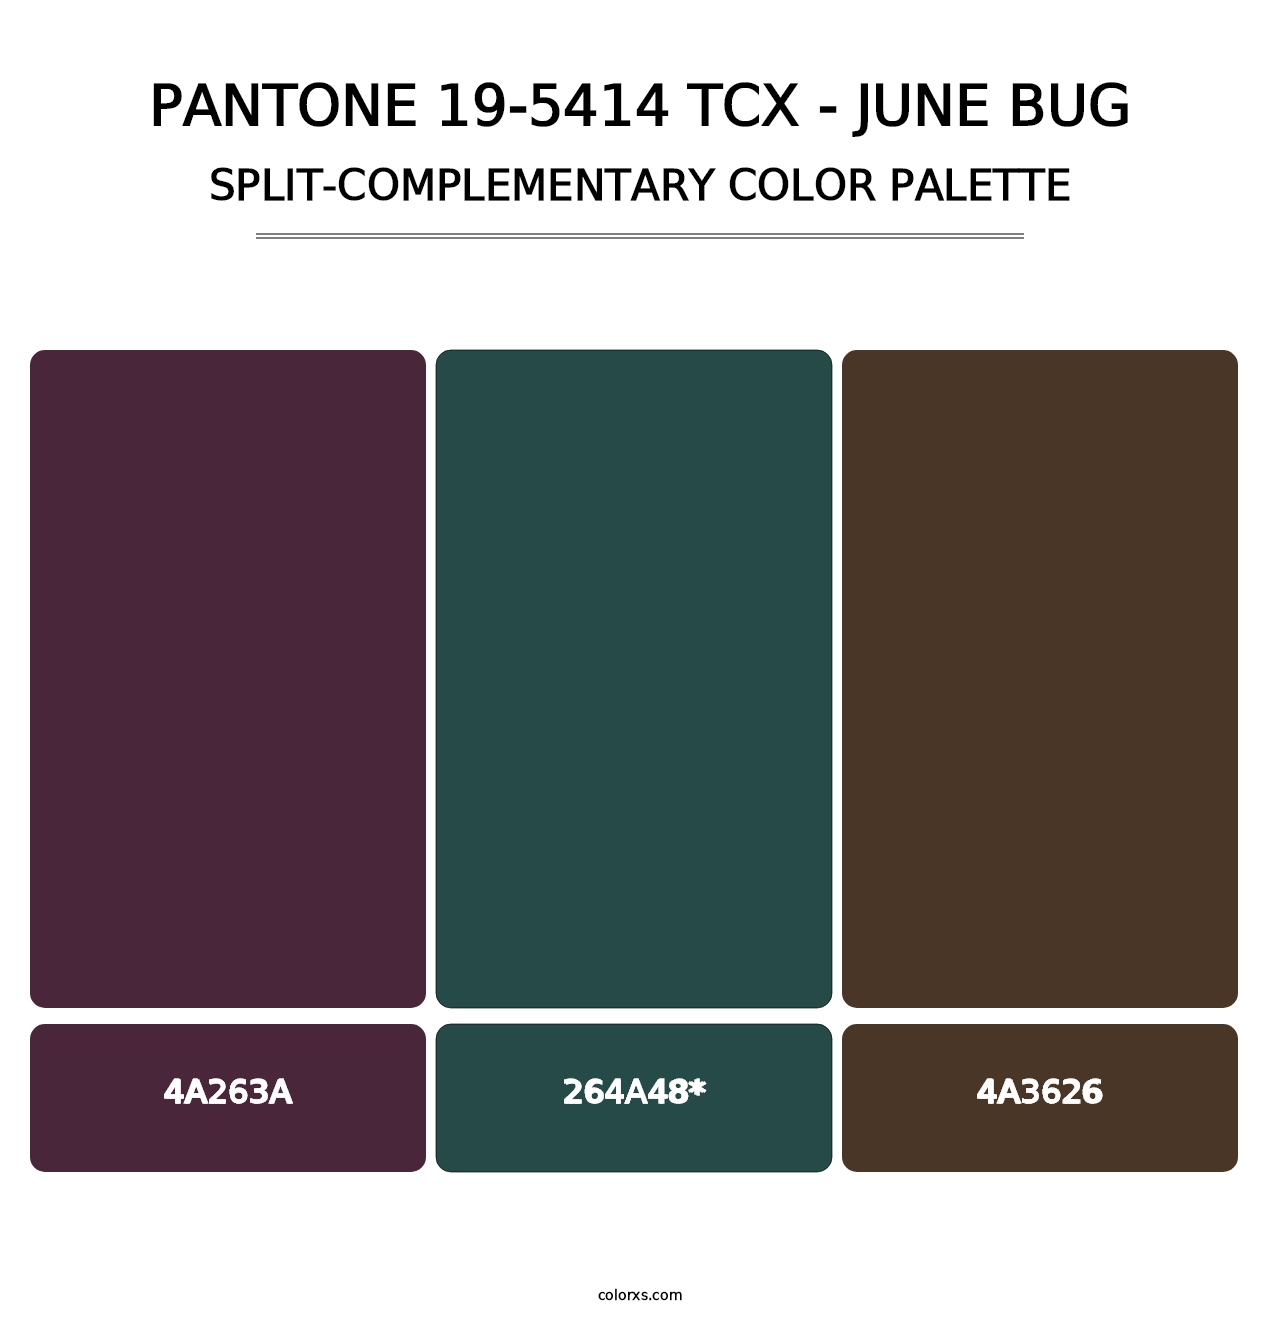 PANTONE 19-5414 TCX - June Bug - Split-Complementary Color Palette